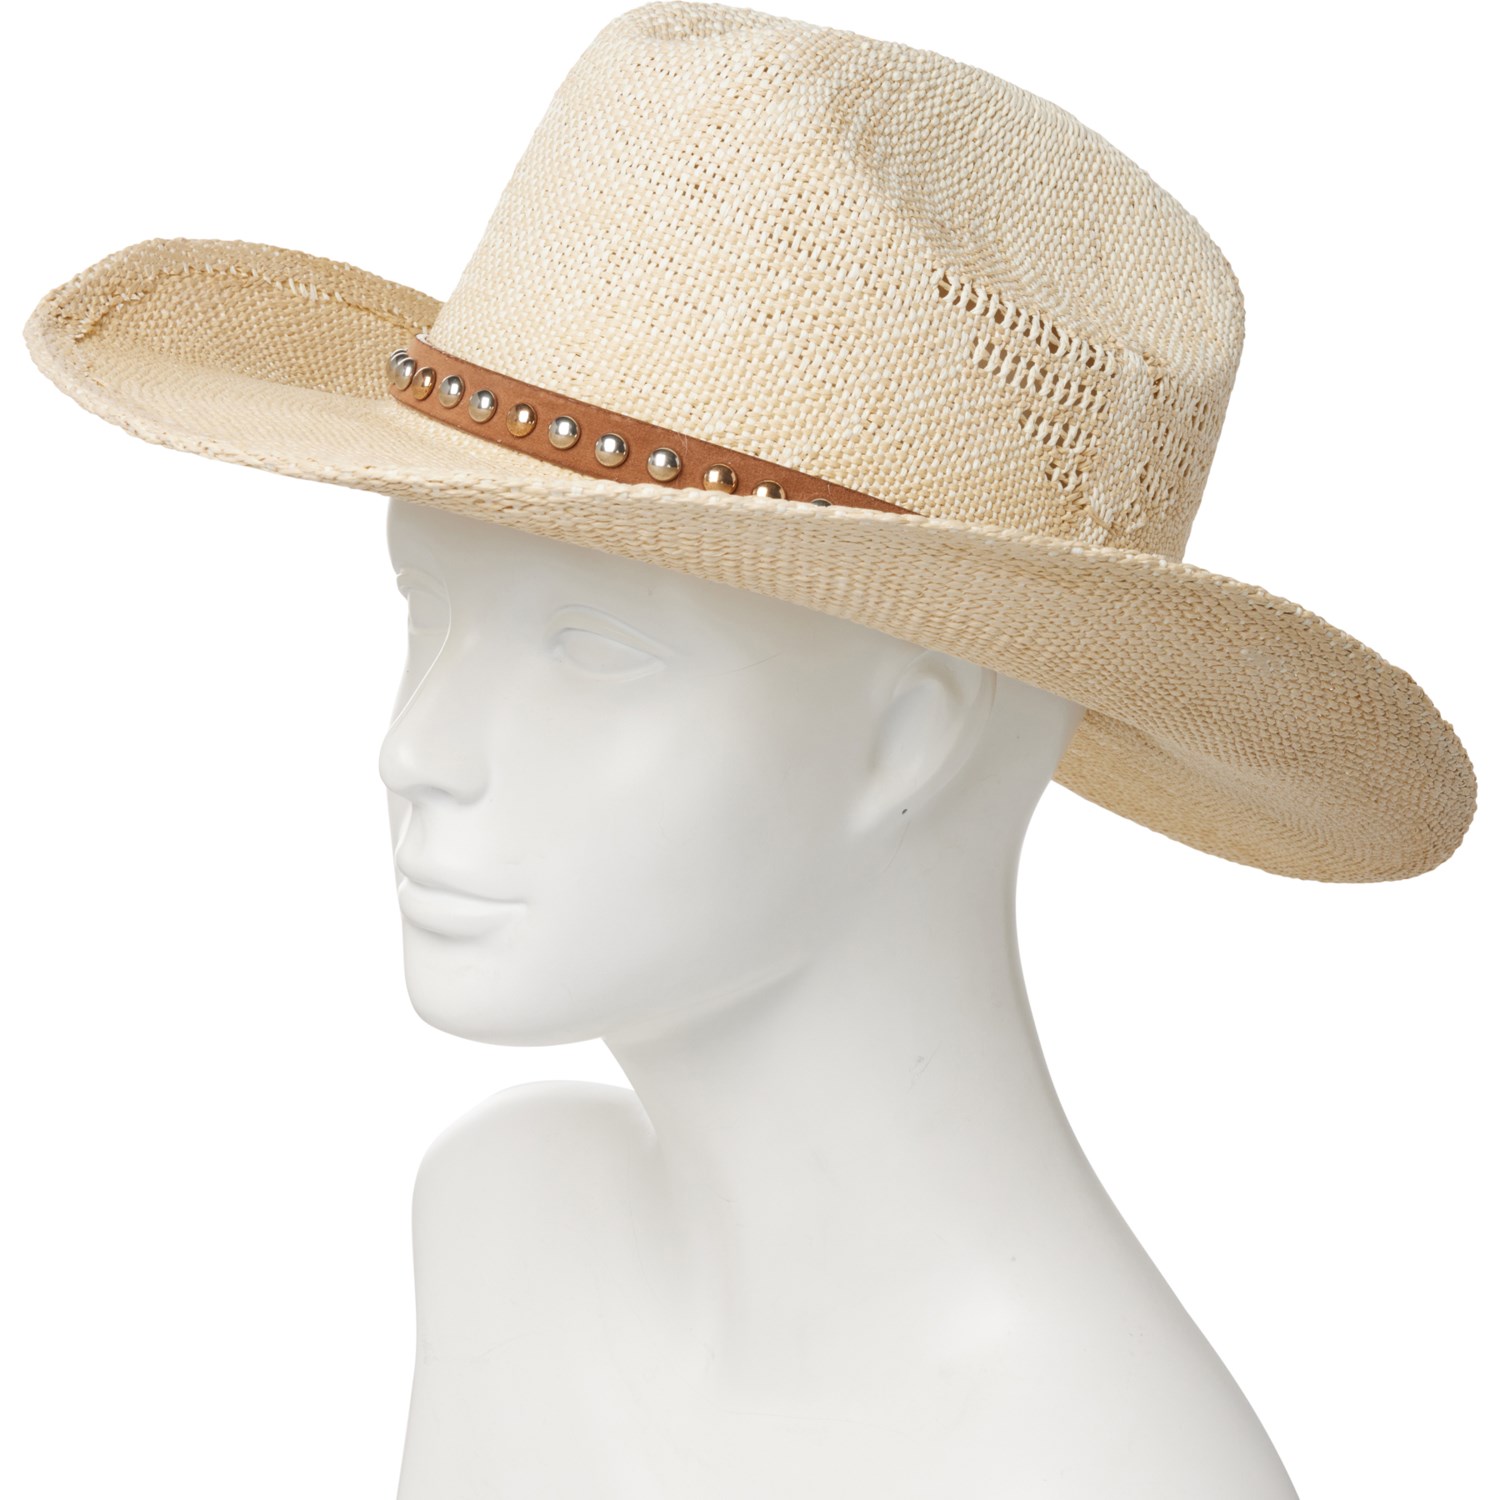 WAVE RUNNER Men's Beach Straw Hat- Wide Brim Sun Hat with UPF 50+